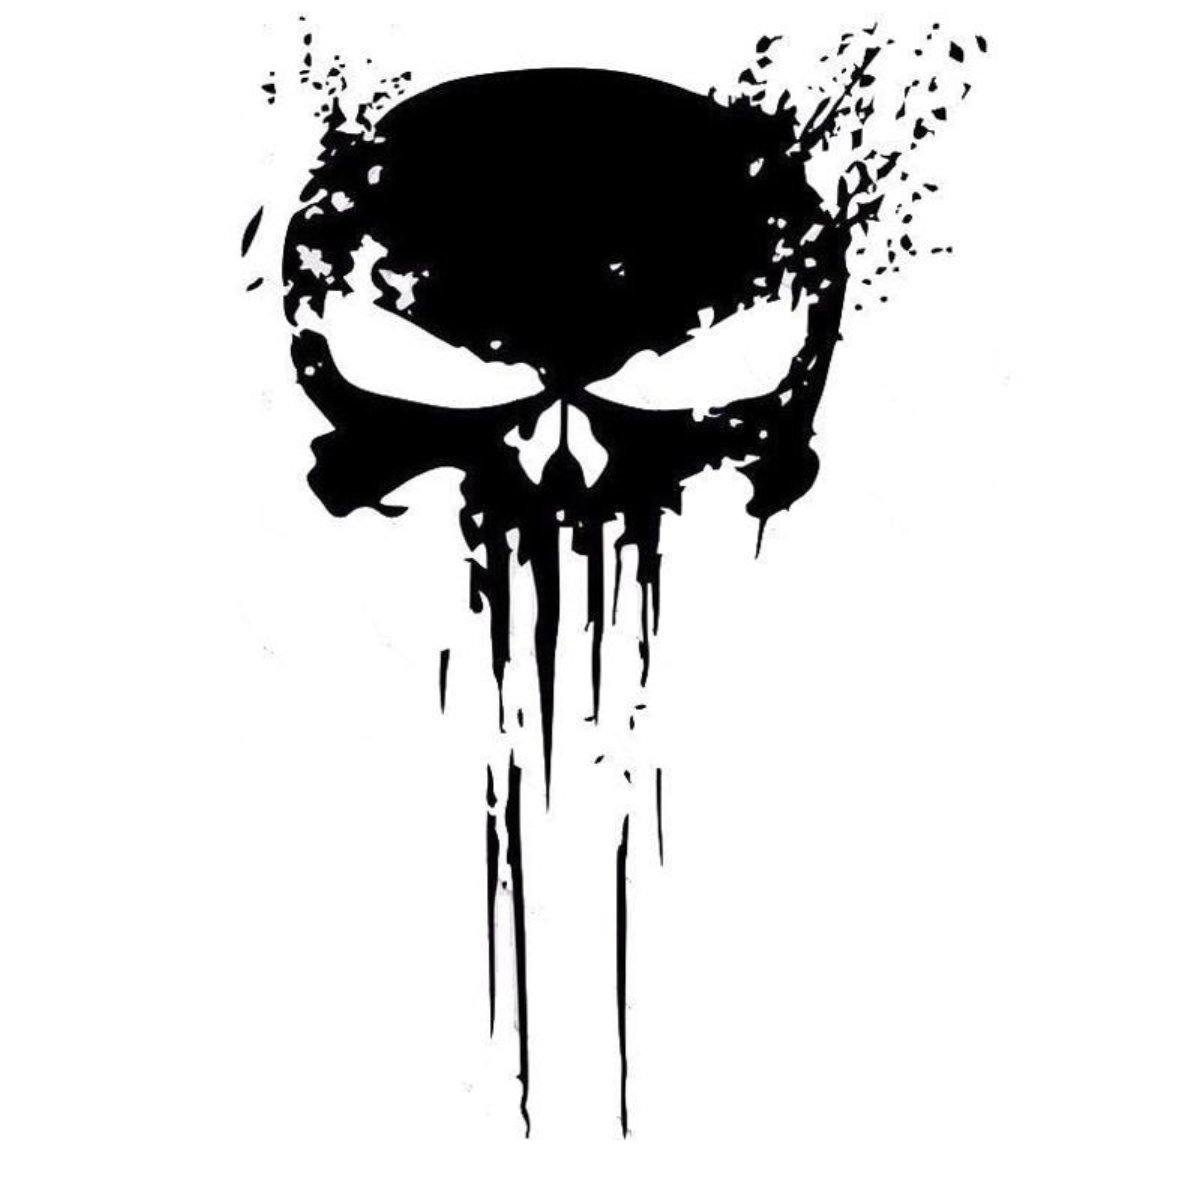 Skull Punisher Sticker by ByAdon